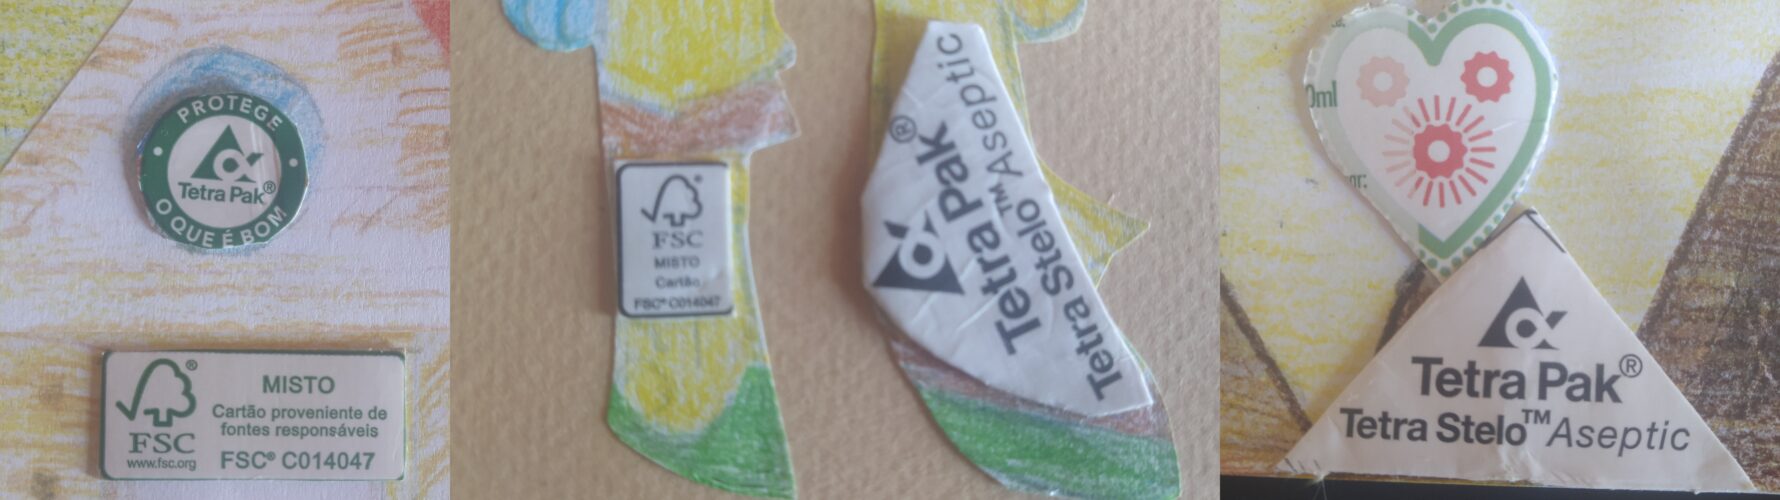 Símbolos FSC e Tetrapak recortados da embalagem e colados.